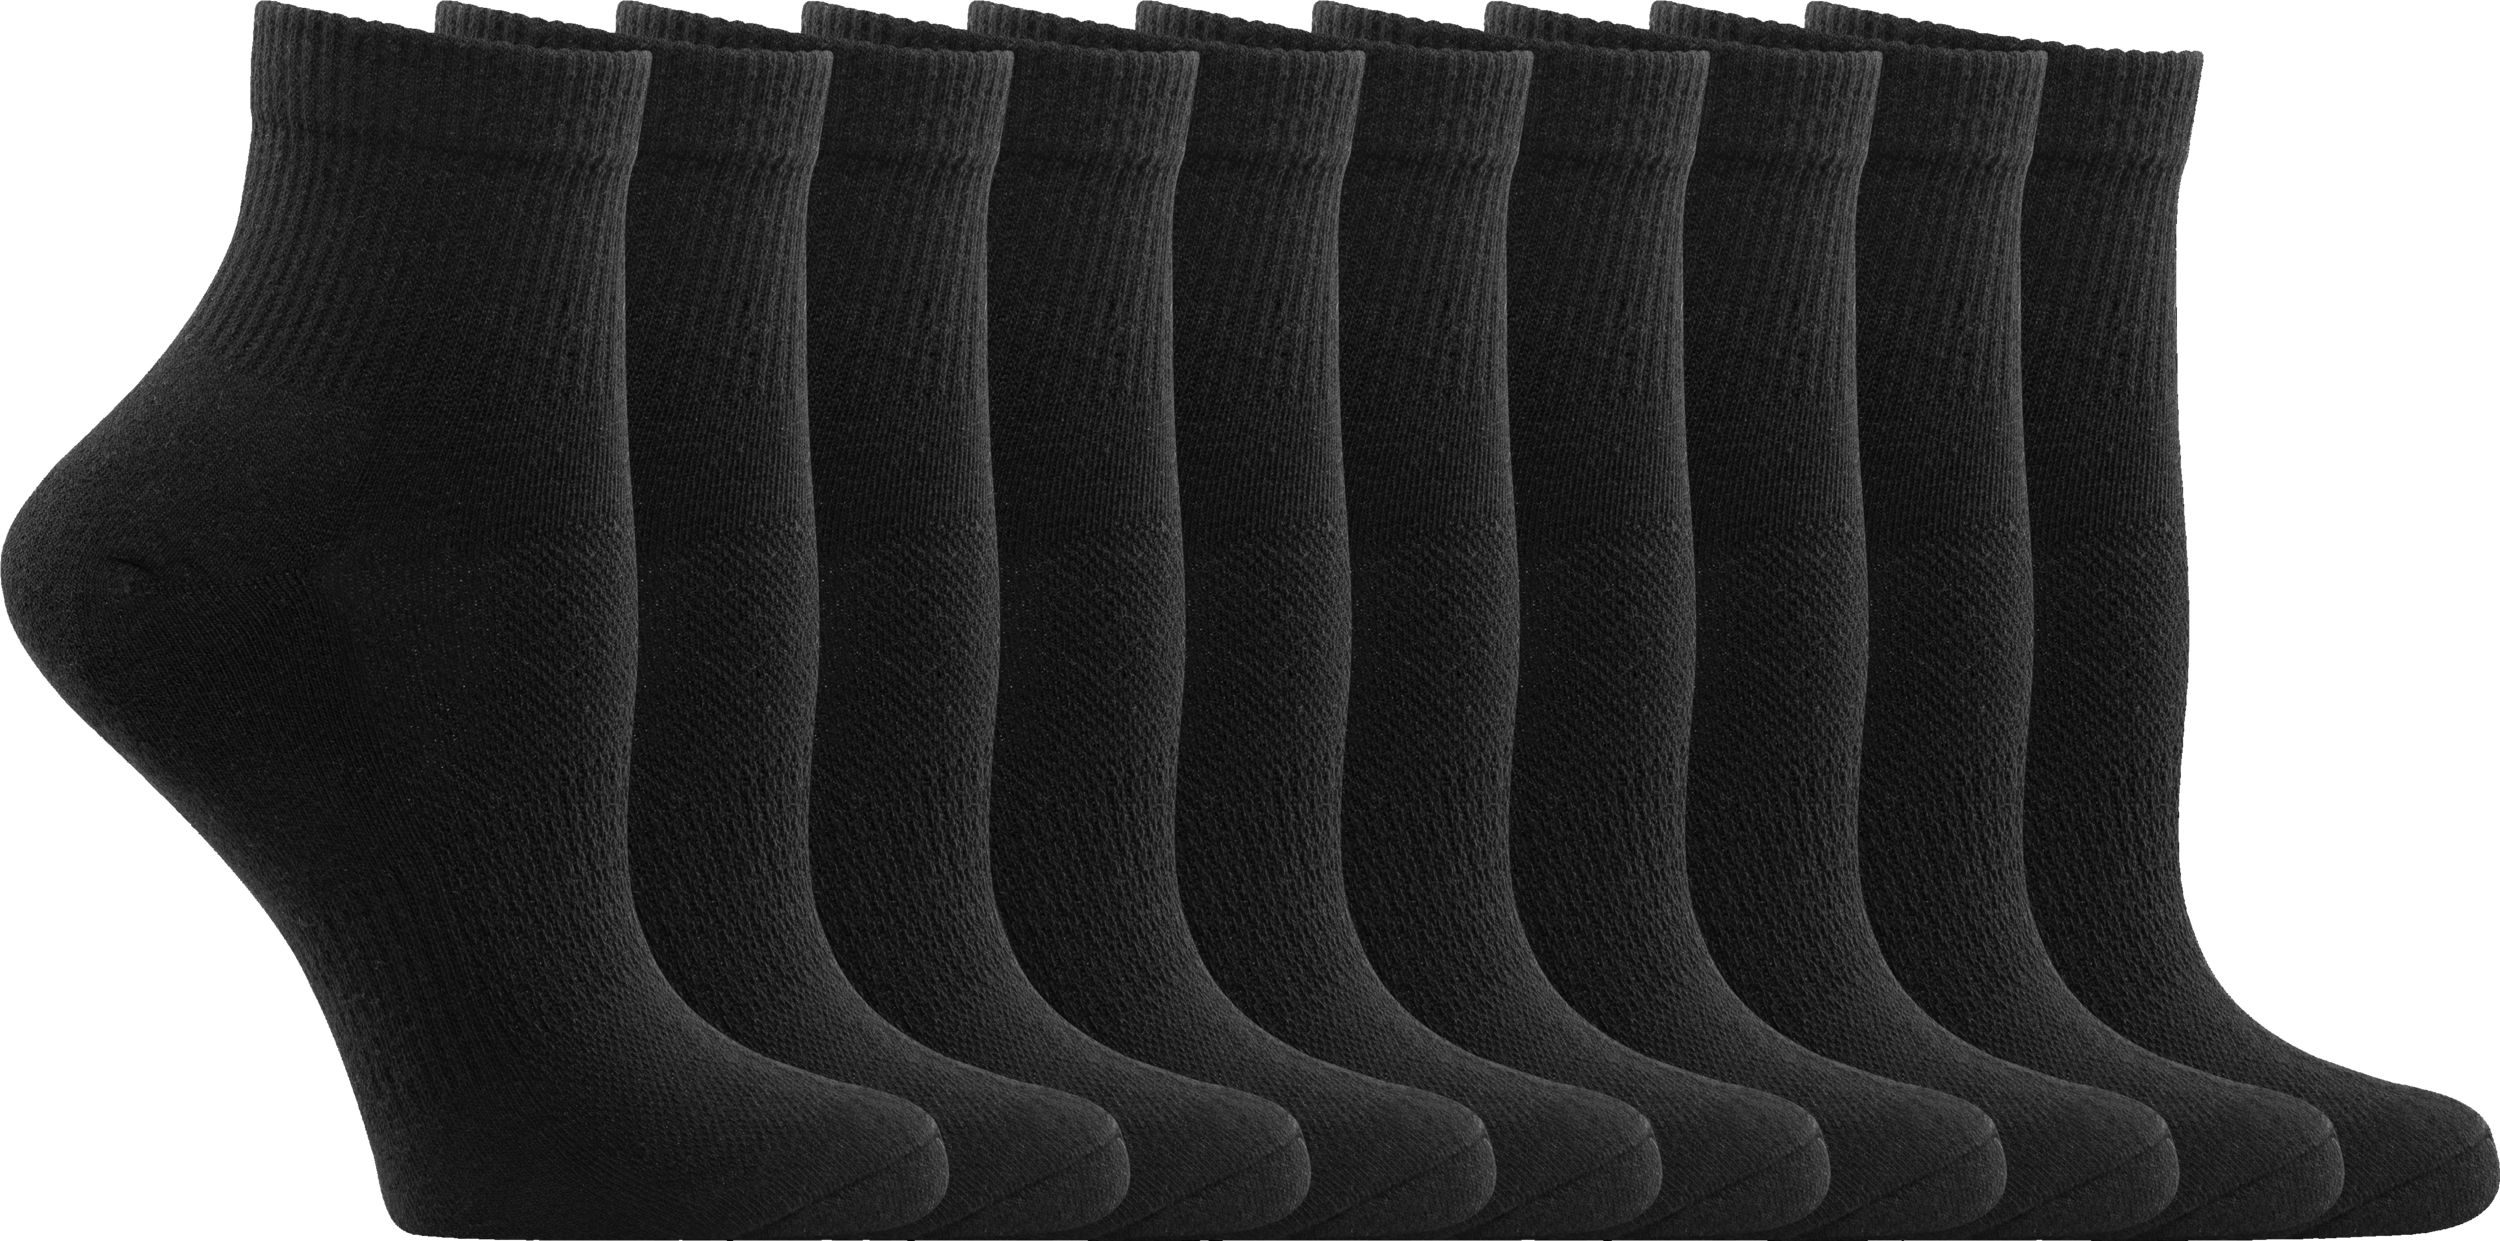 Sport Chek Women's All Quarter Socks  Arch Support 10-Pack